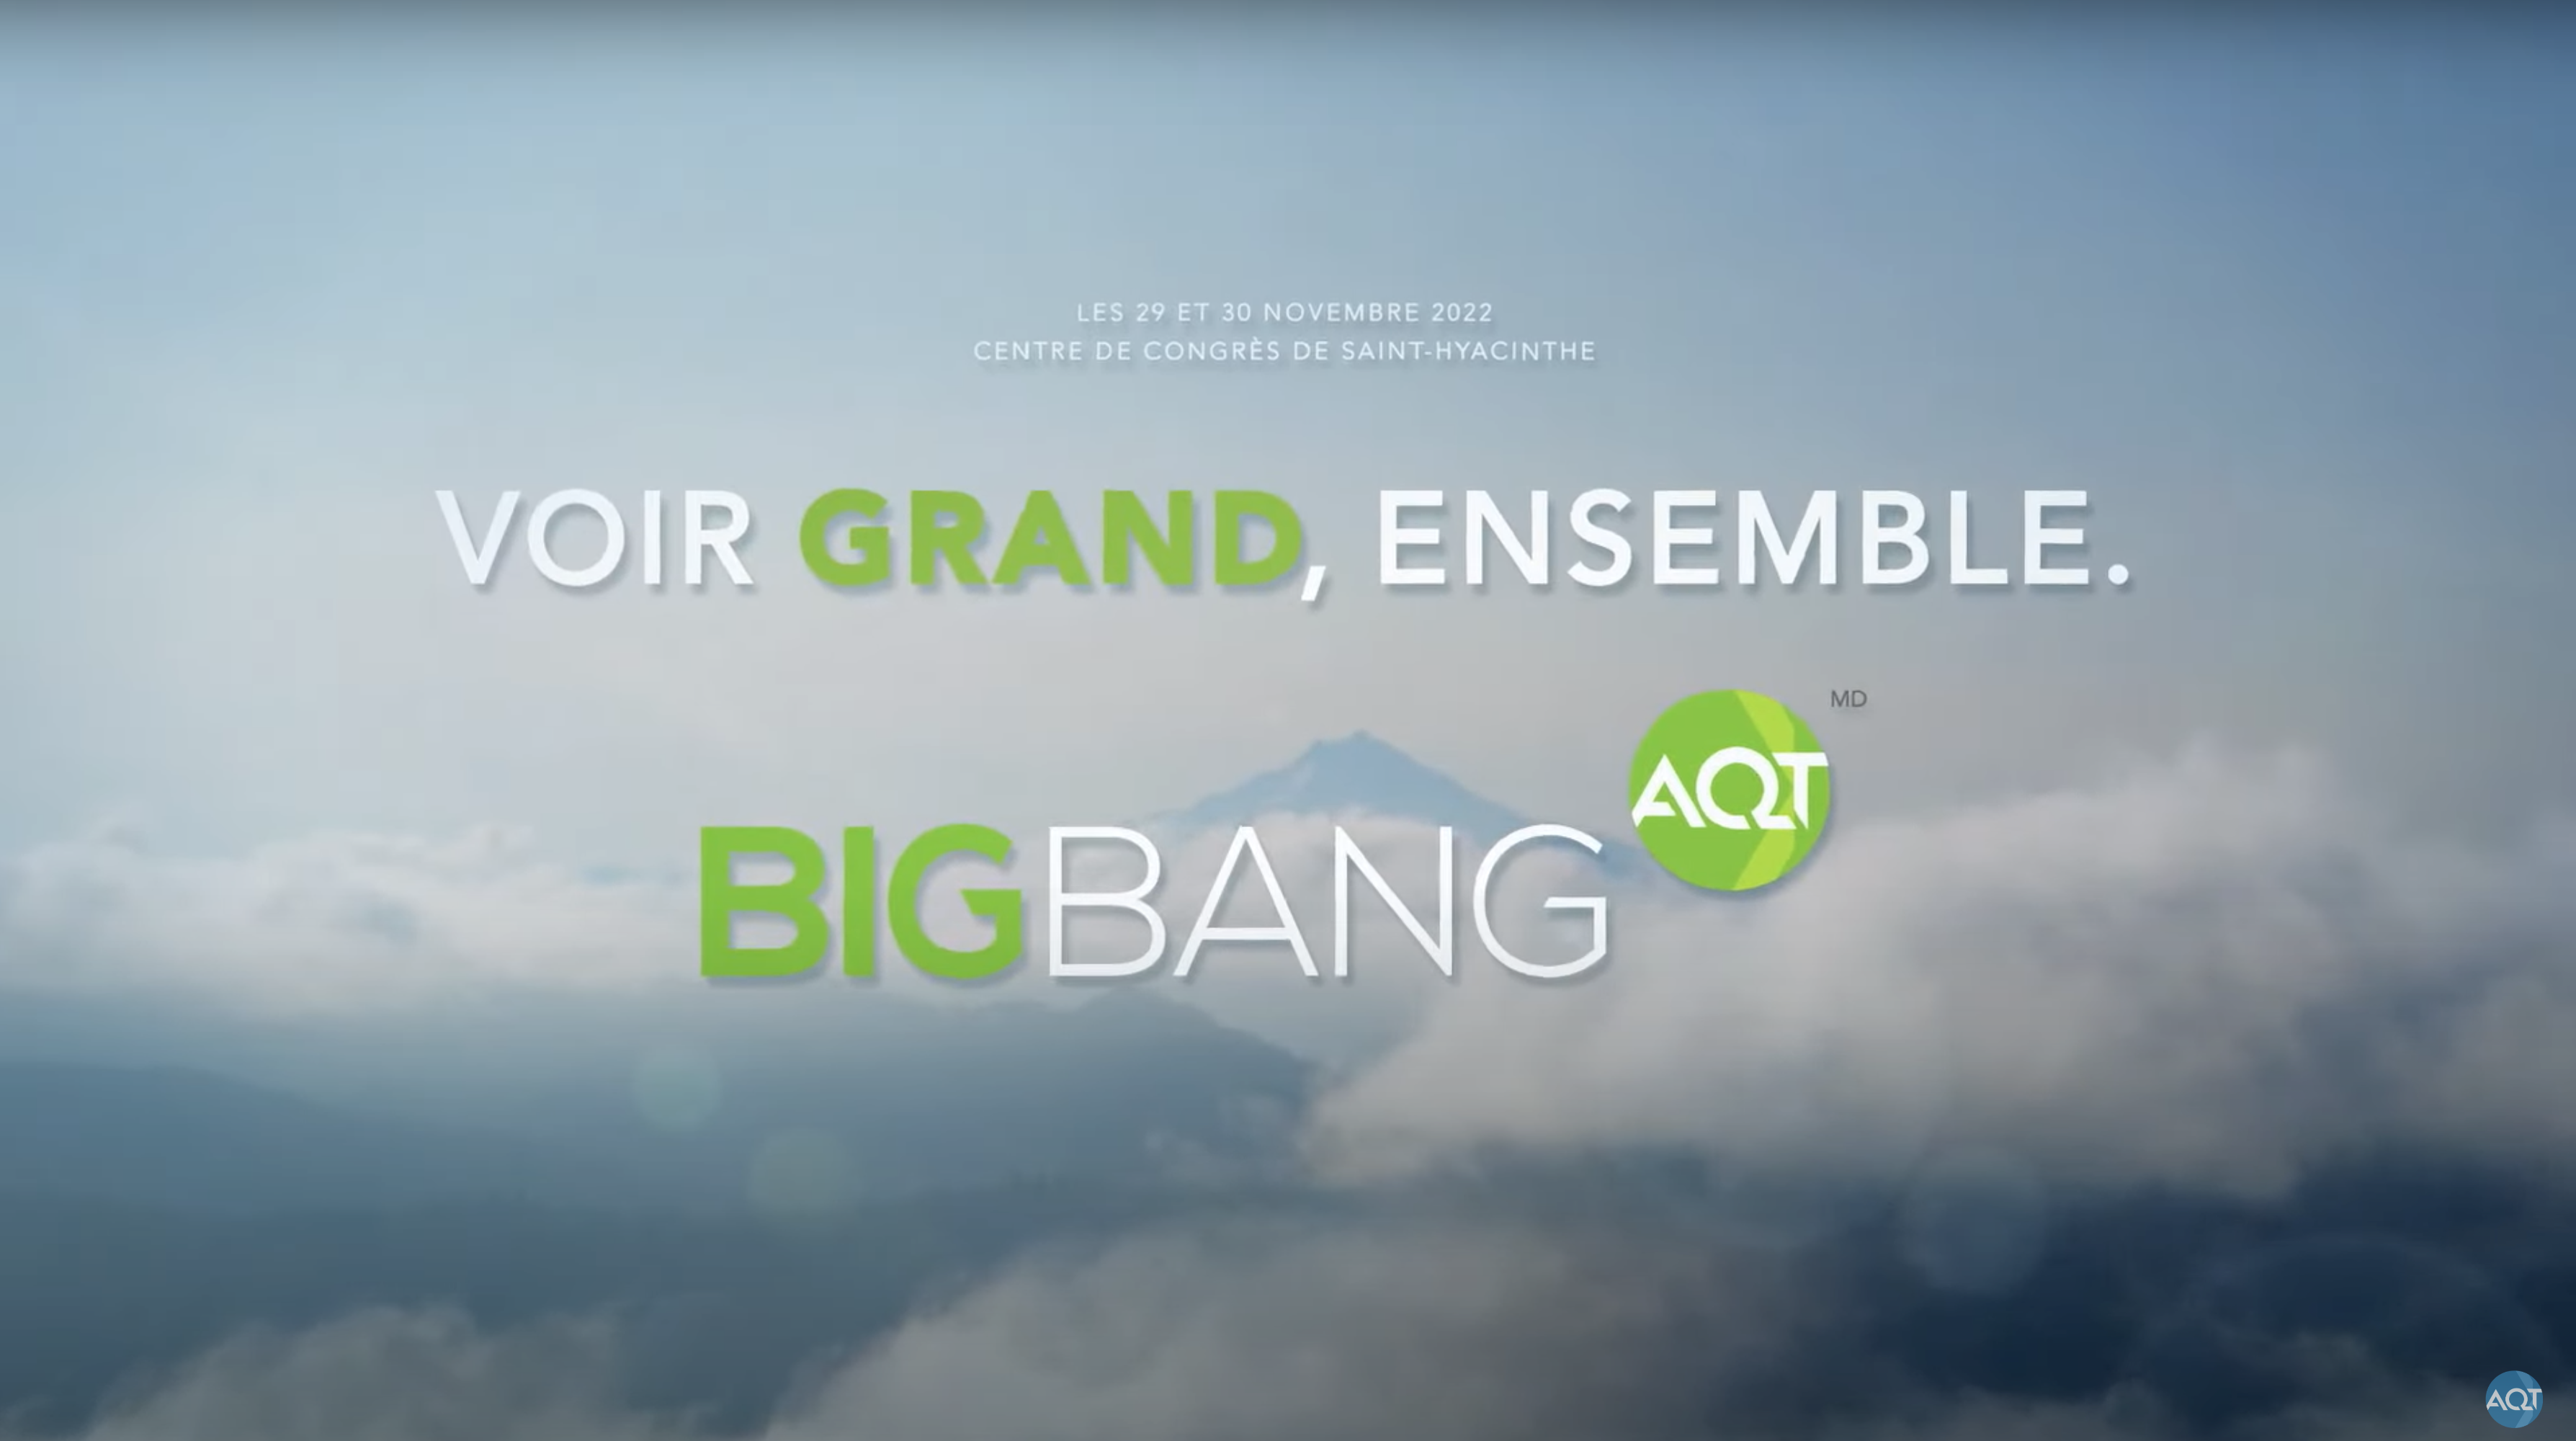 Big Bang AQT